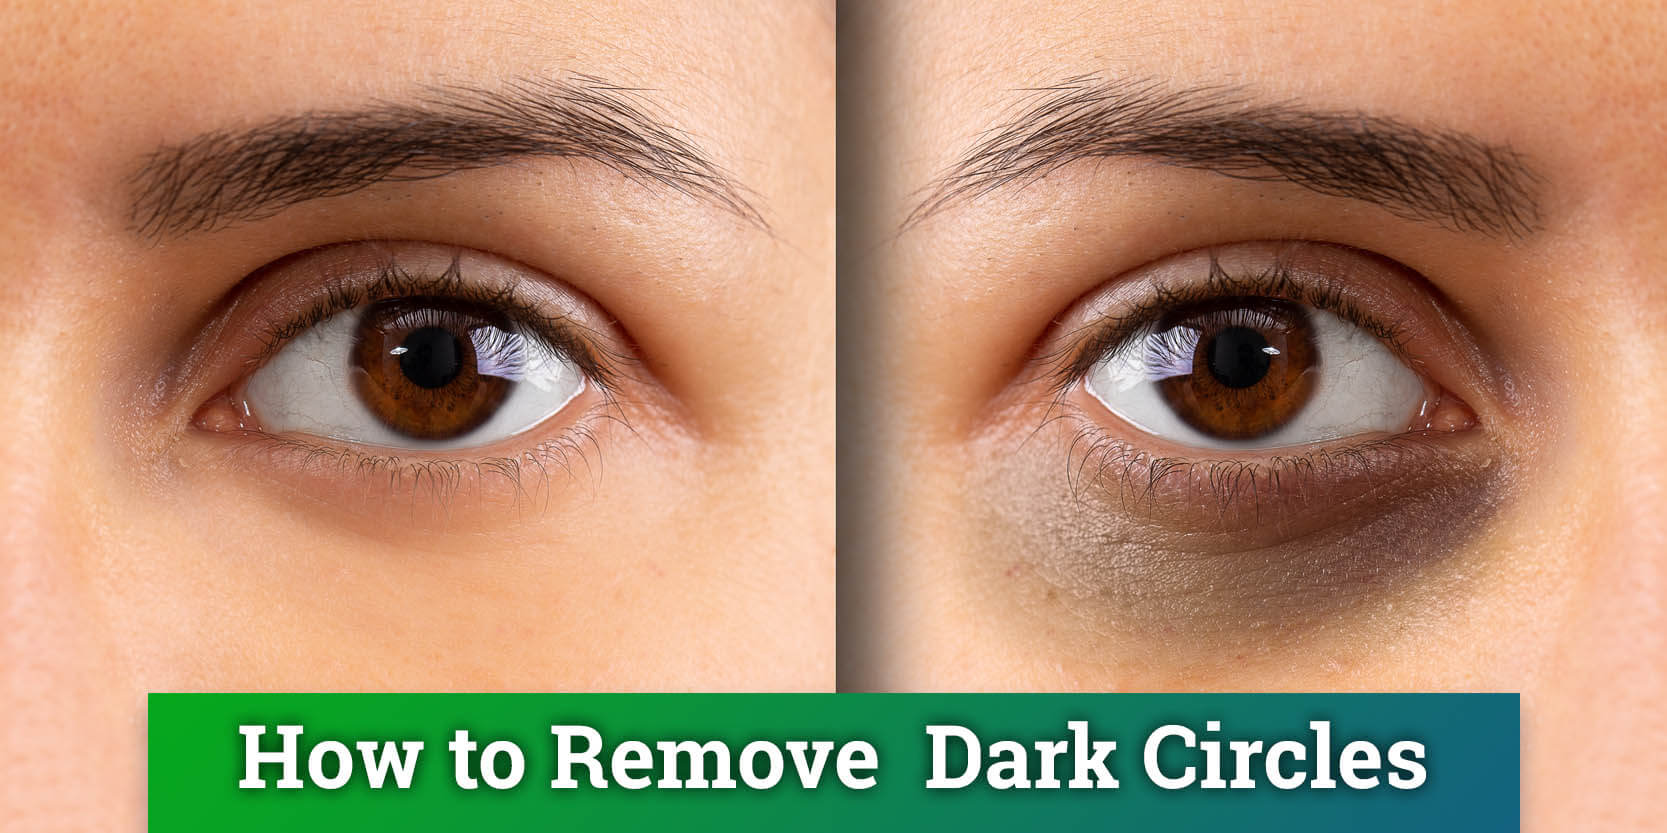 Reducing under-eye circles